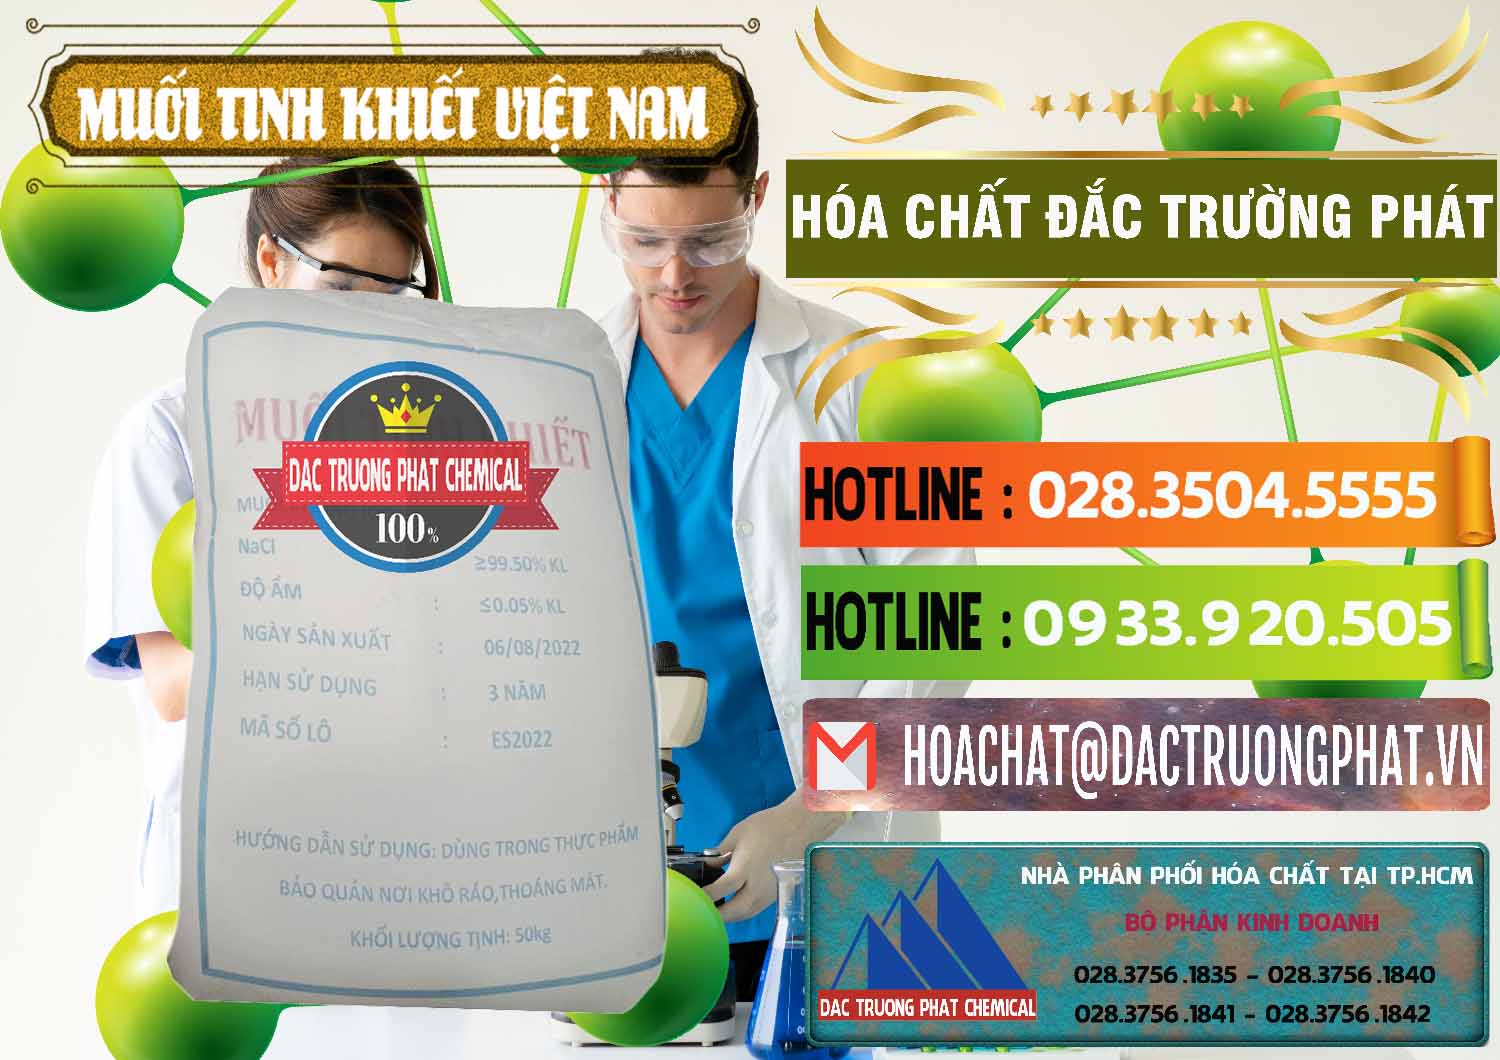 Cty chuyên bán - phân phối Muối NaCL – Sodium Chloride Việt Nam - 0384 - Nhà cung cấp & phân phối hóa chất tại TP.HCM - cungcaphoachat.com.vn